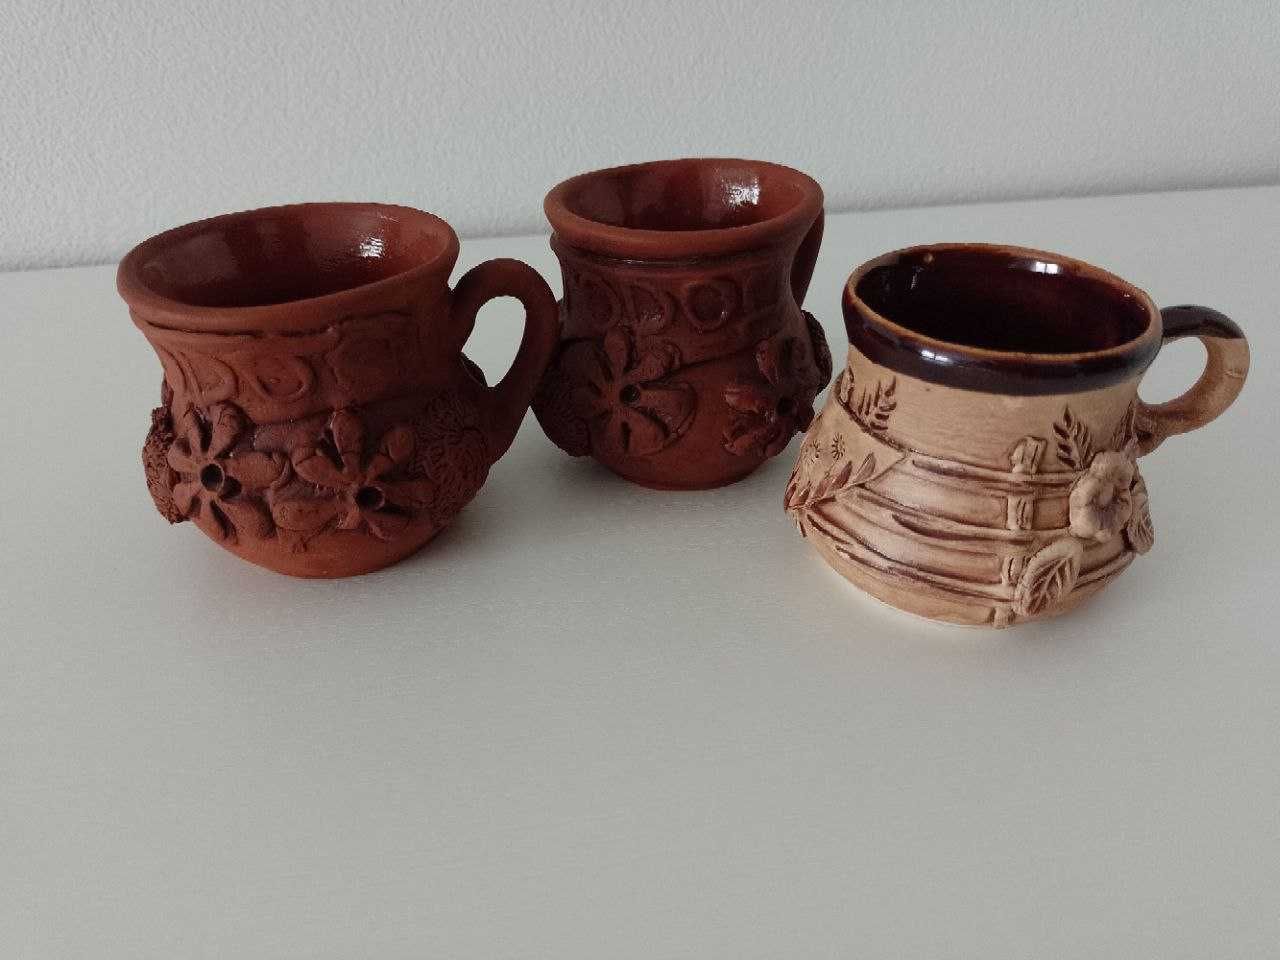 Турка, джезва керамическая,глиняная,чашки кофейные,набор для кофе